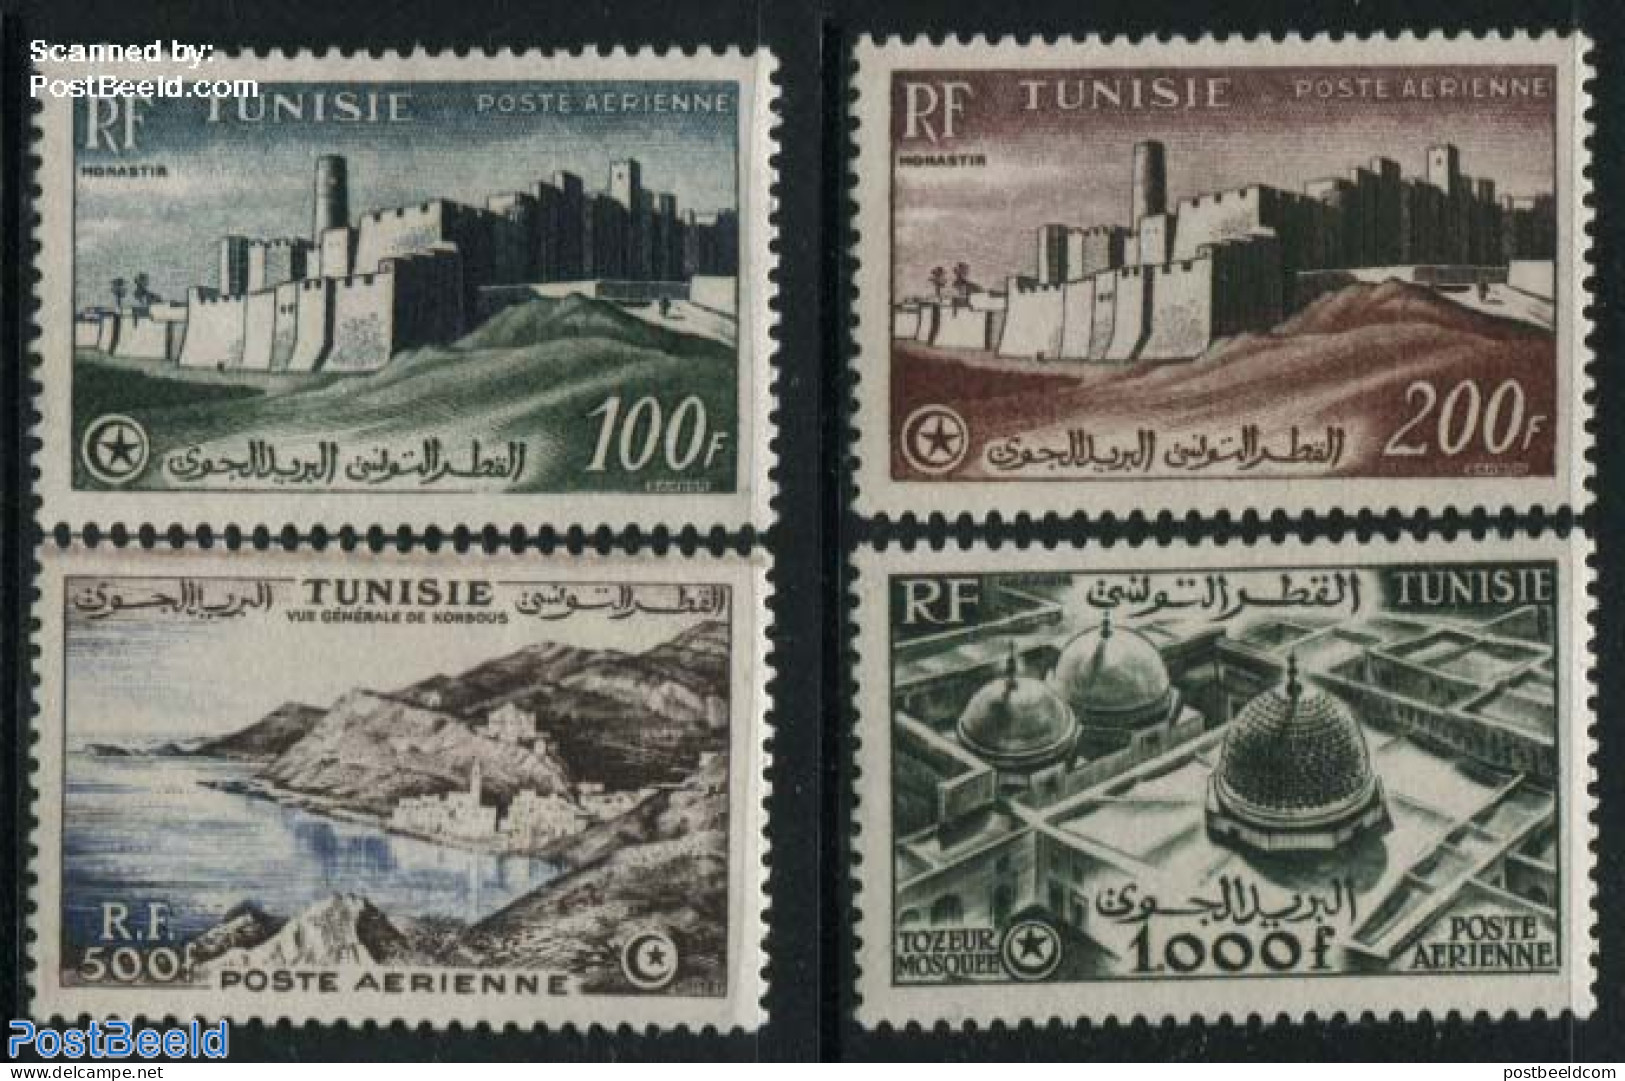 Tunisia 1953 Definitives 4v (with RF), Unused (hinged), Art - Castles & Fortifications - Schlösser U. Burgen